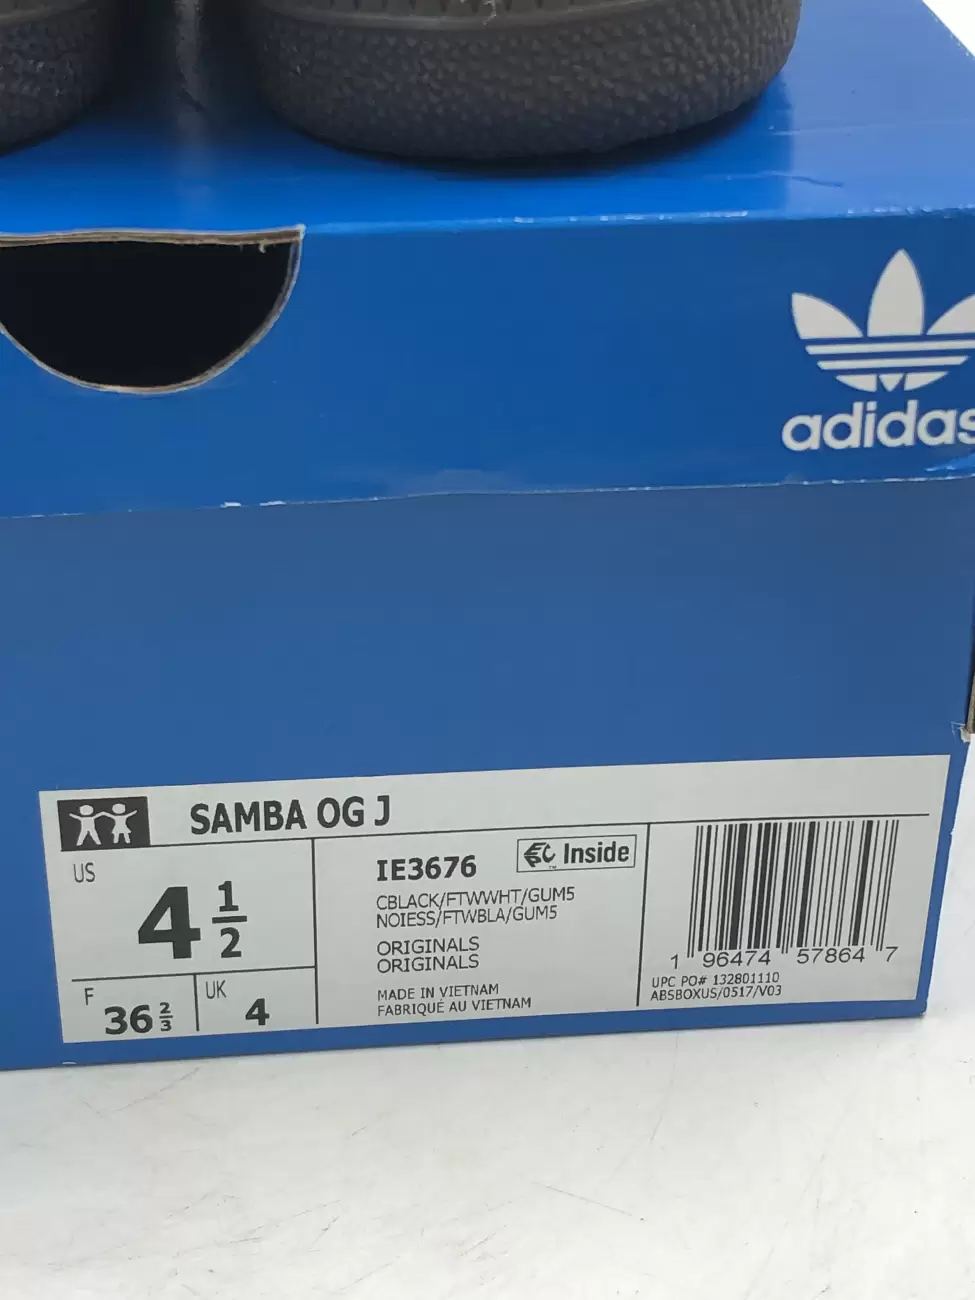 47307 - Adidas Samba OG Black White Gum (GS) | Item Details - AfterMarket